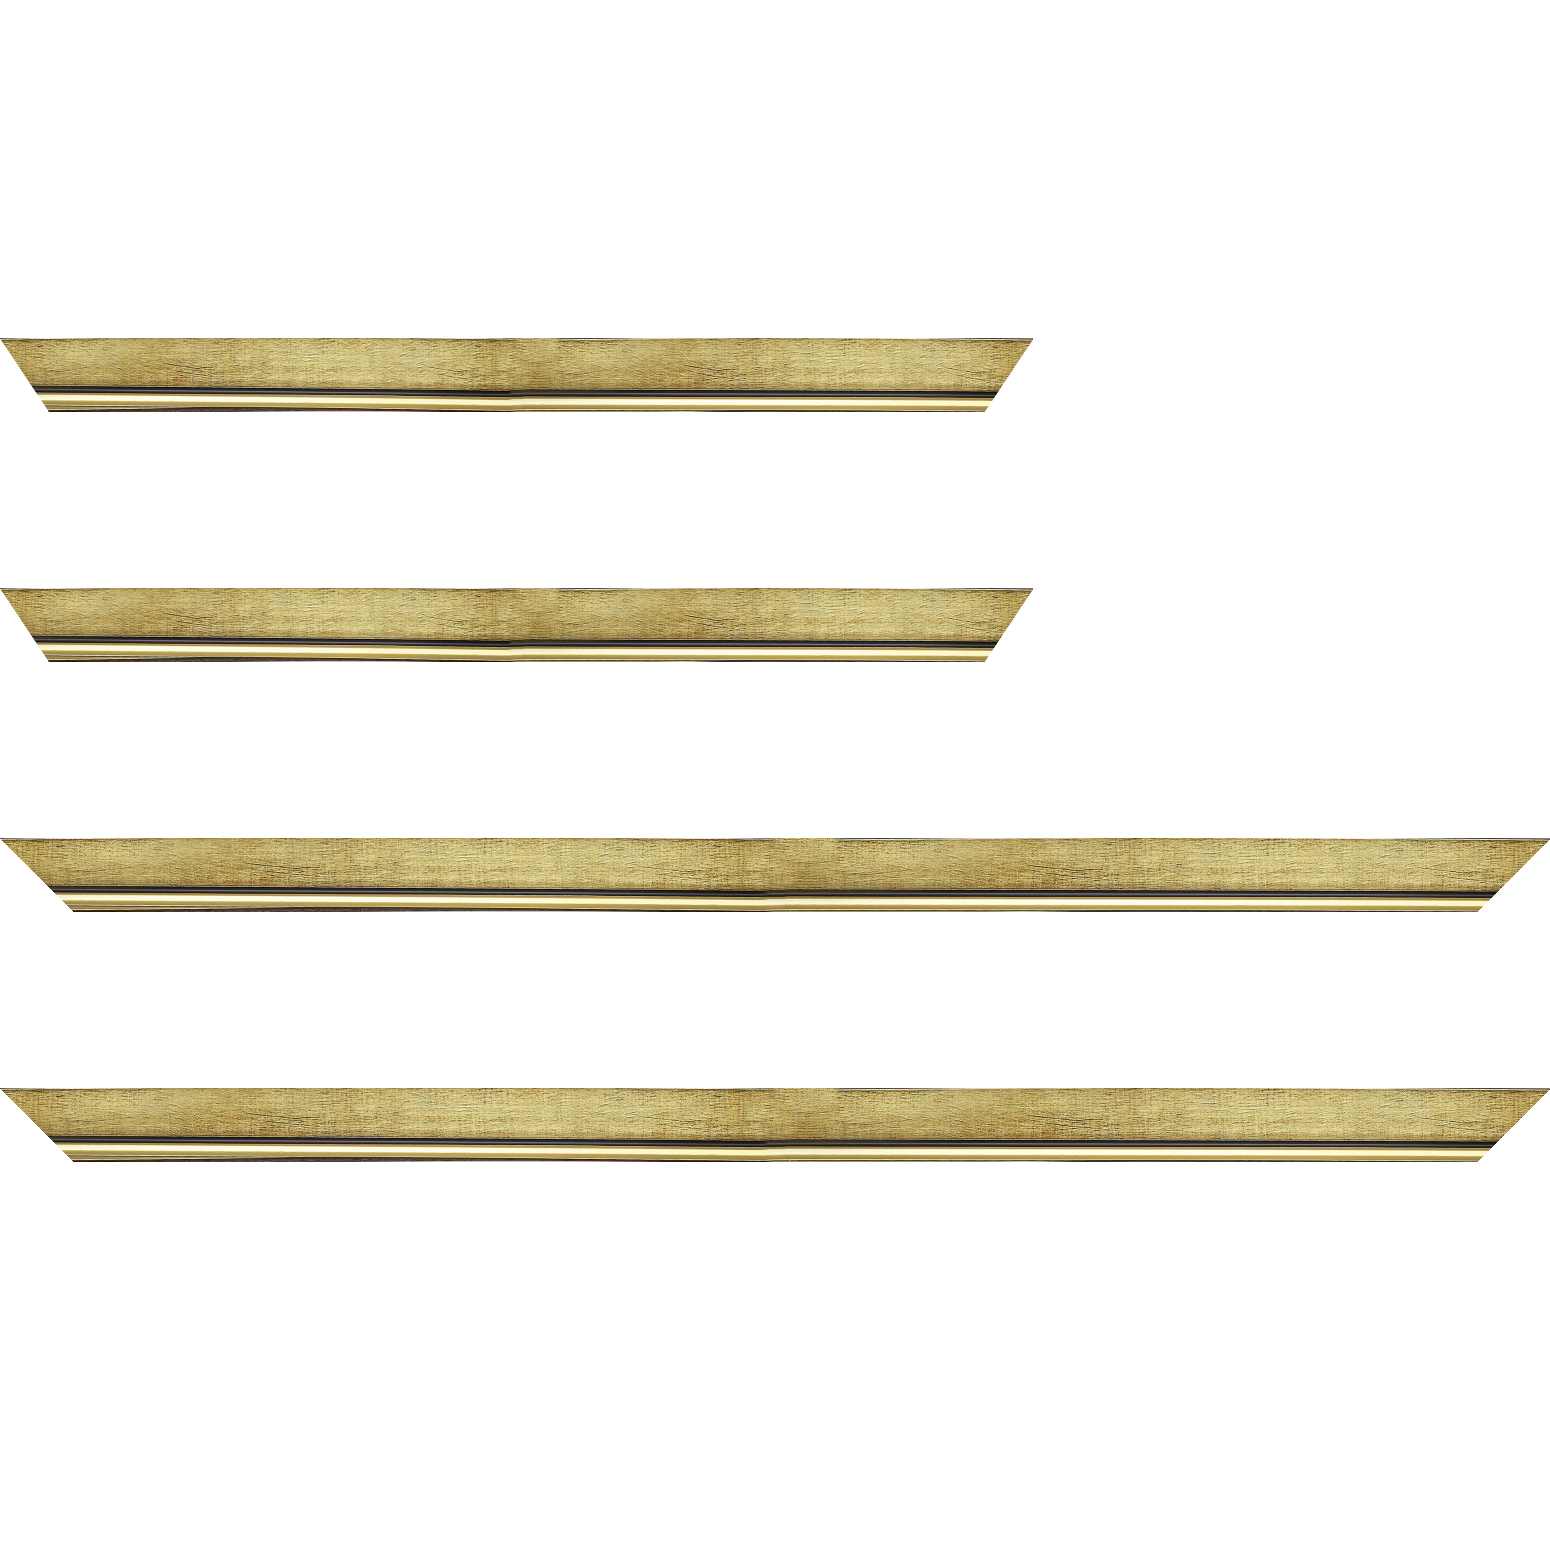 Baguette bois profil plat largeur 2.5cm couleur or filet or surligné noir - 25x25